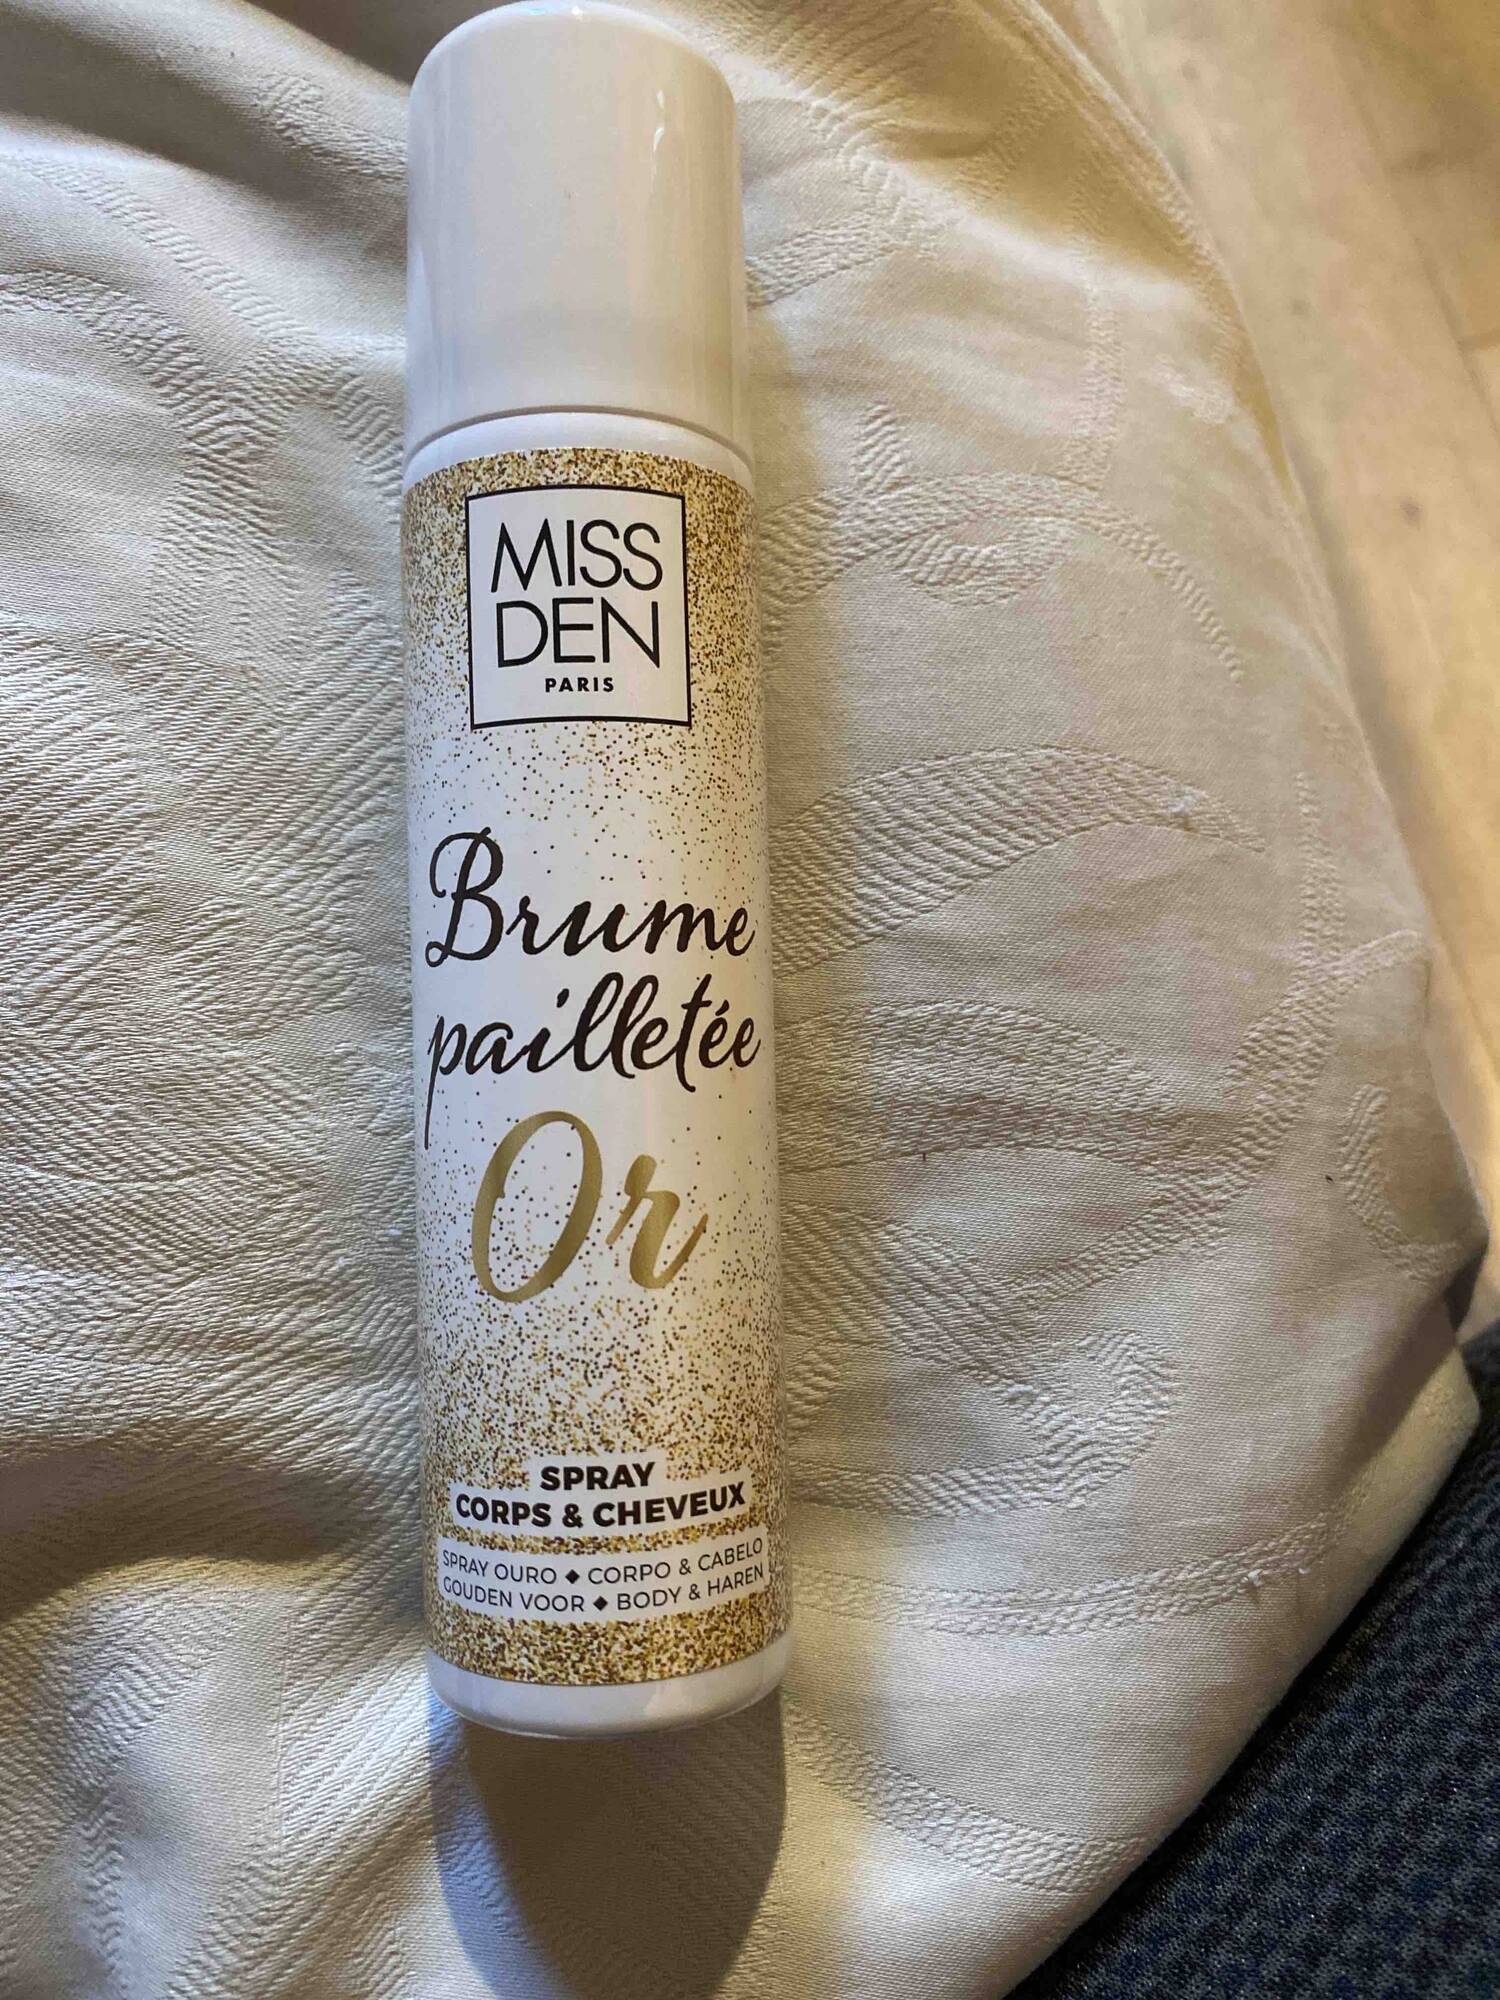 MISS DEN - Brume pailletée or - Spray corps & cheveux